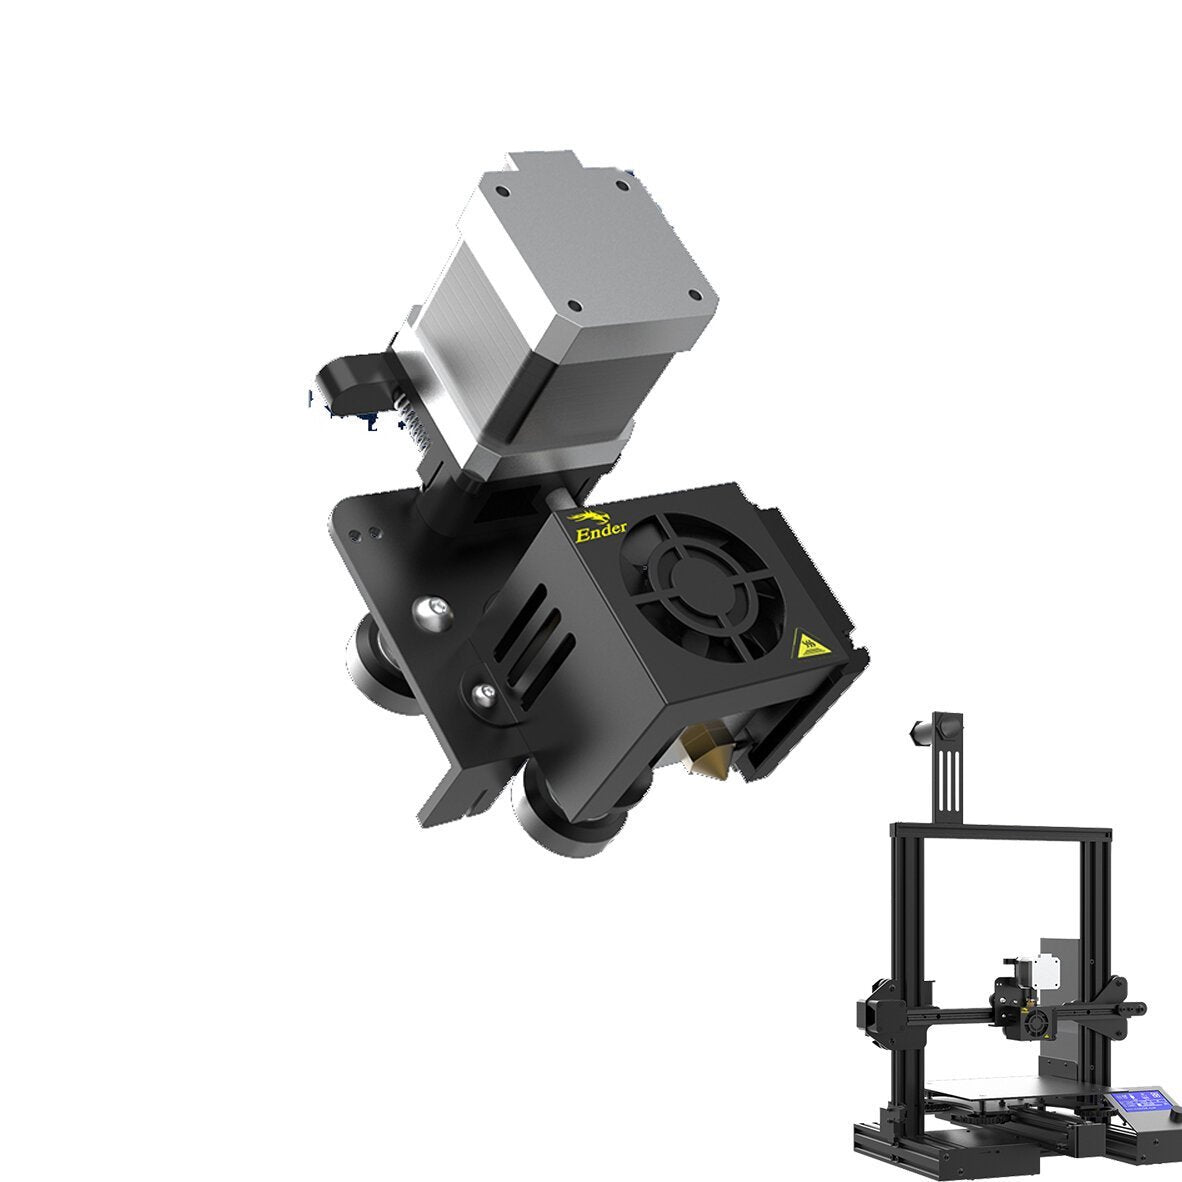 Buy Creality Ender-3 V2 3D Printer Kit